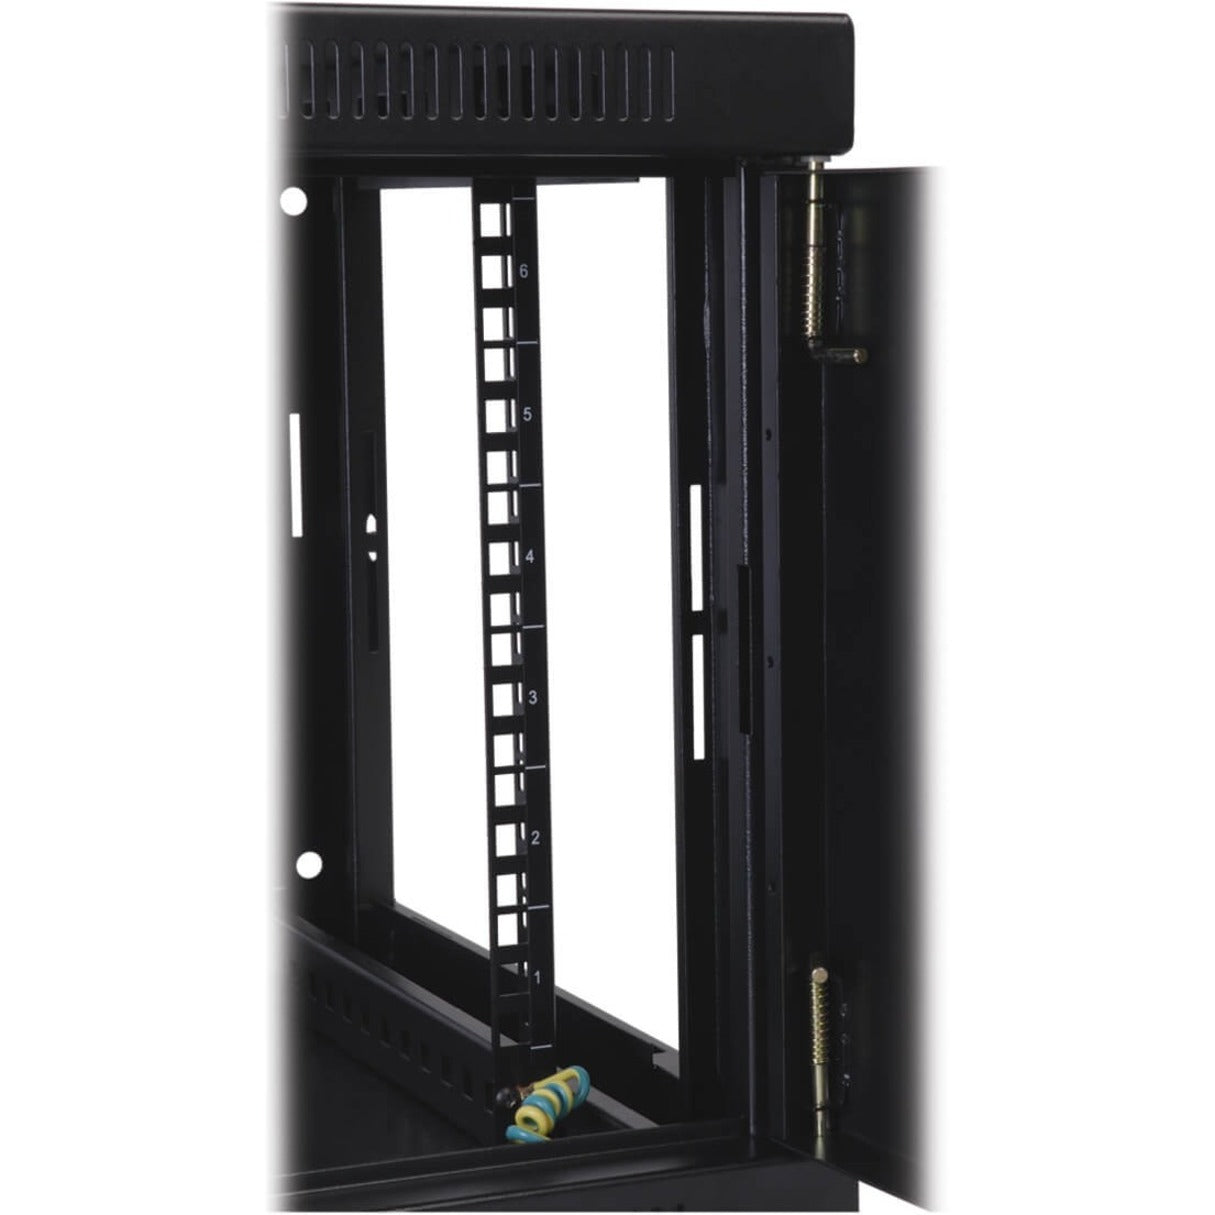 Tripp Lite SRW10USG SmartRack Wall Mount Rack Cabinet, Swing Door, 10U, 200 lb Capacity